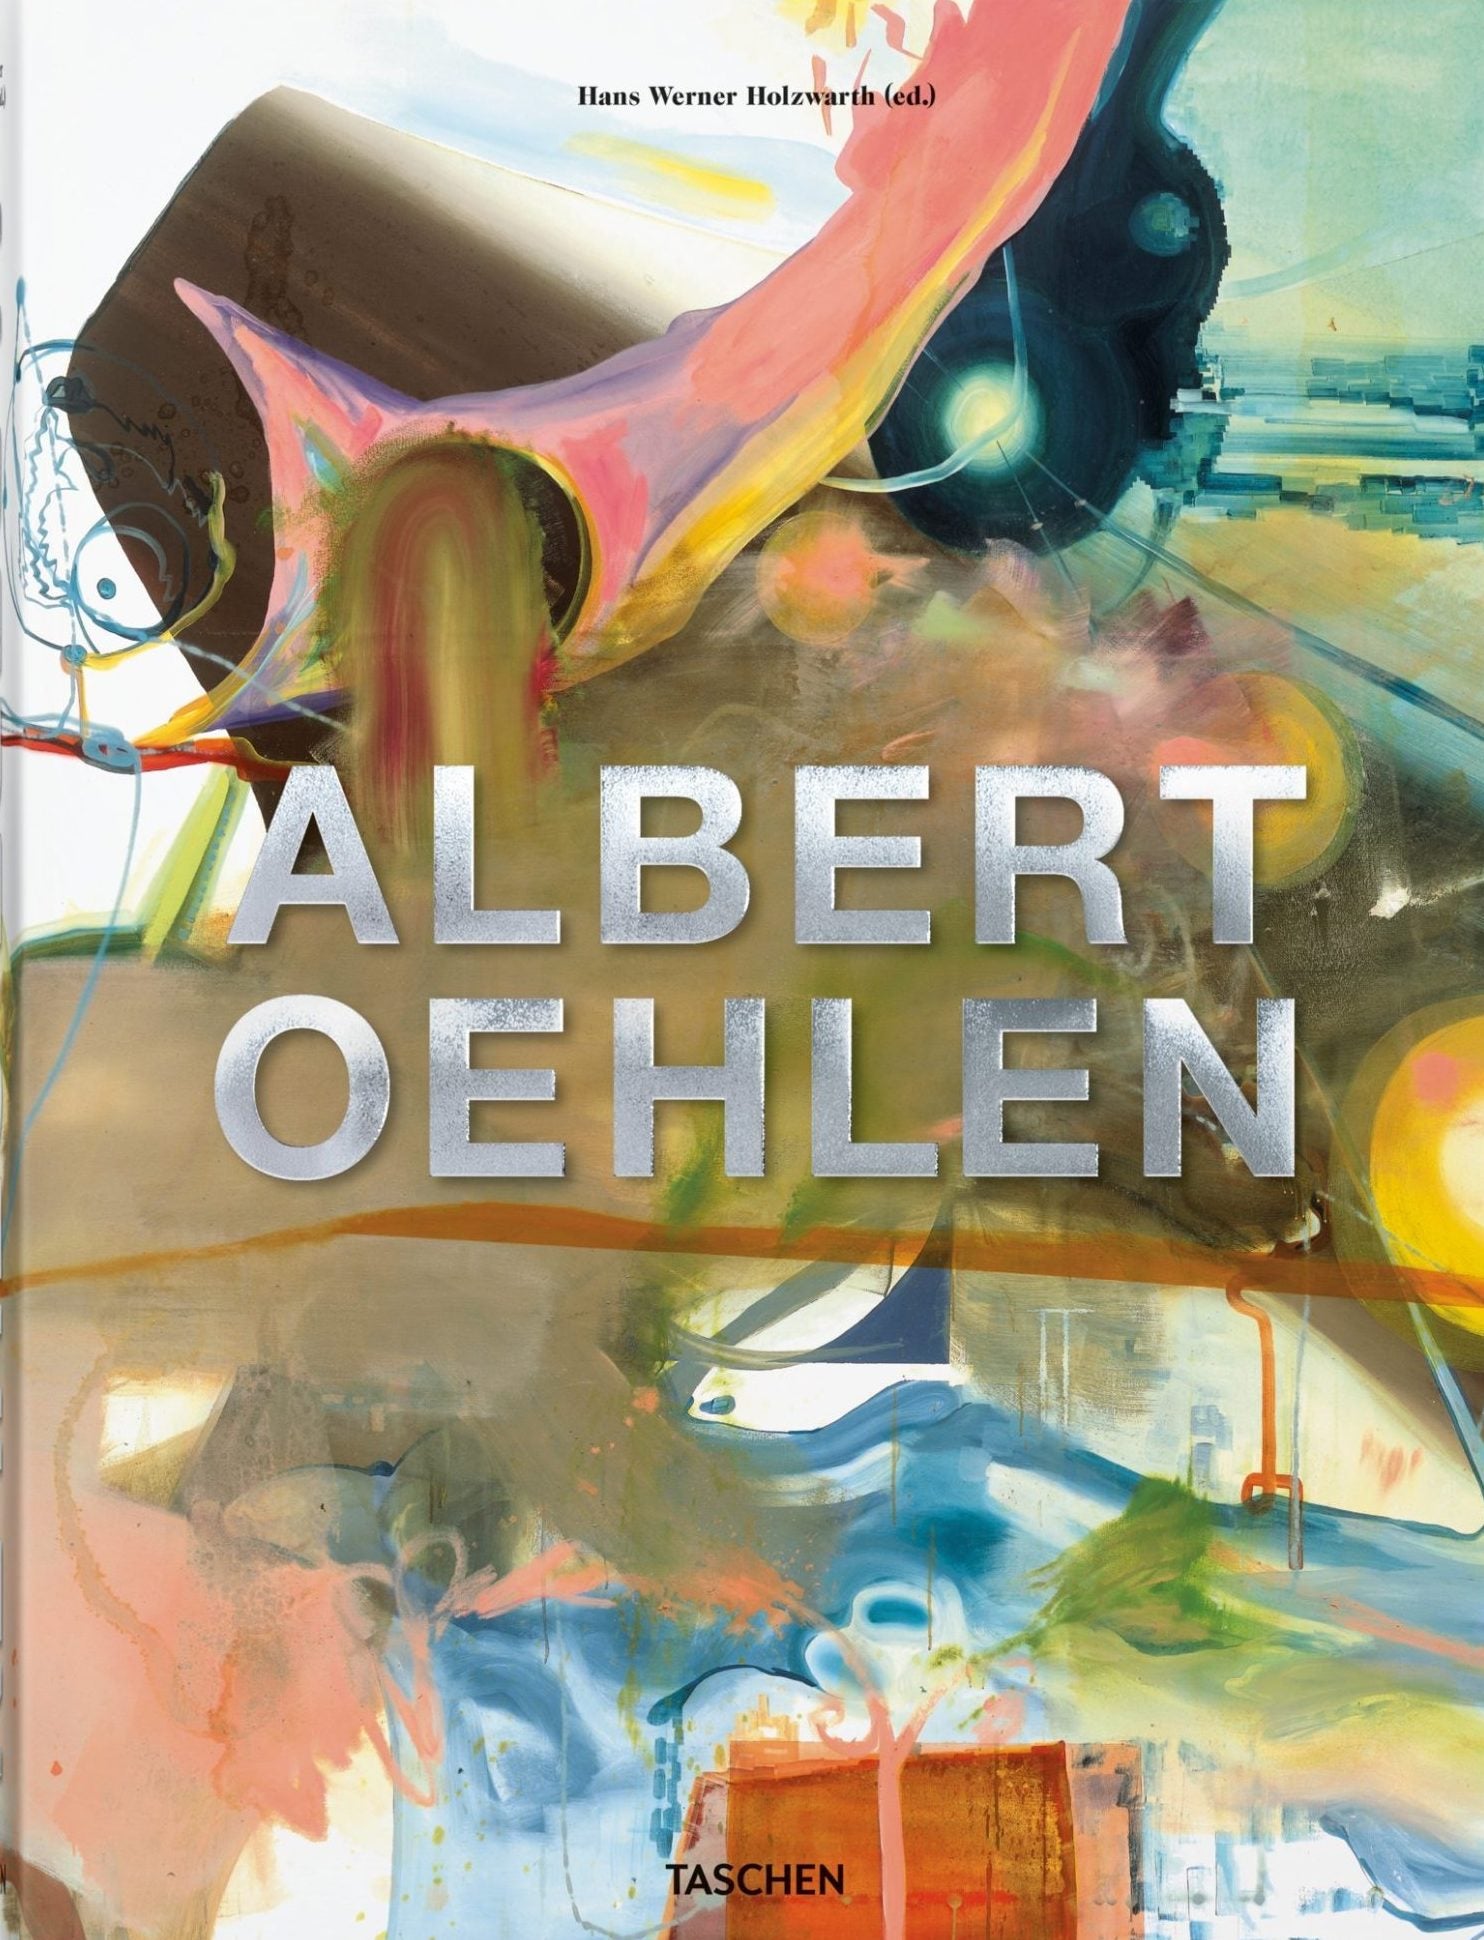 Albert Oehlen